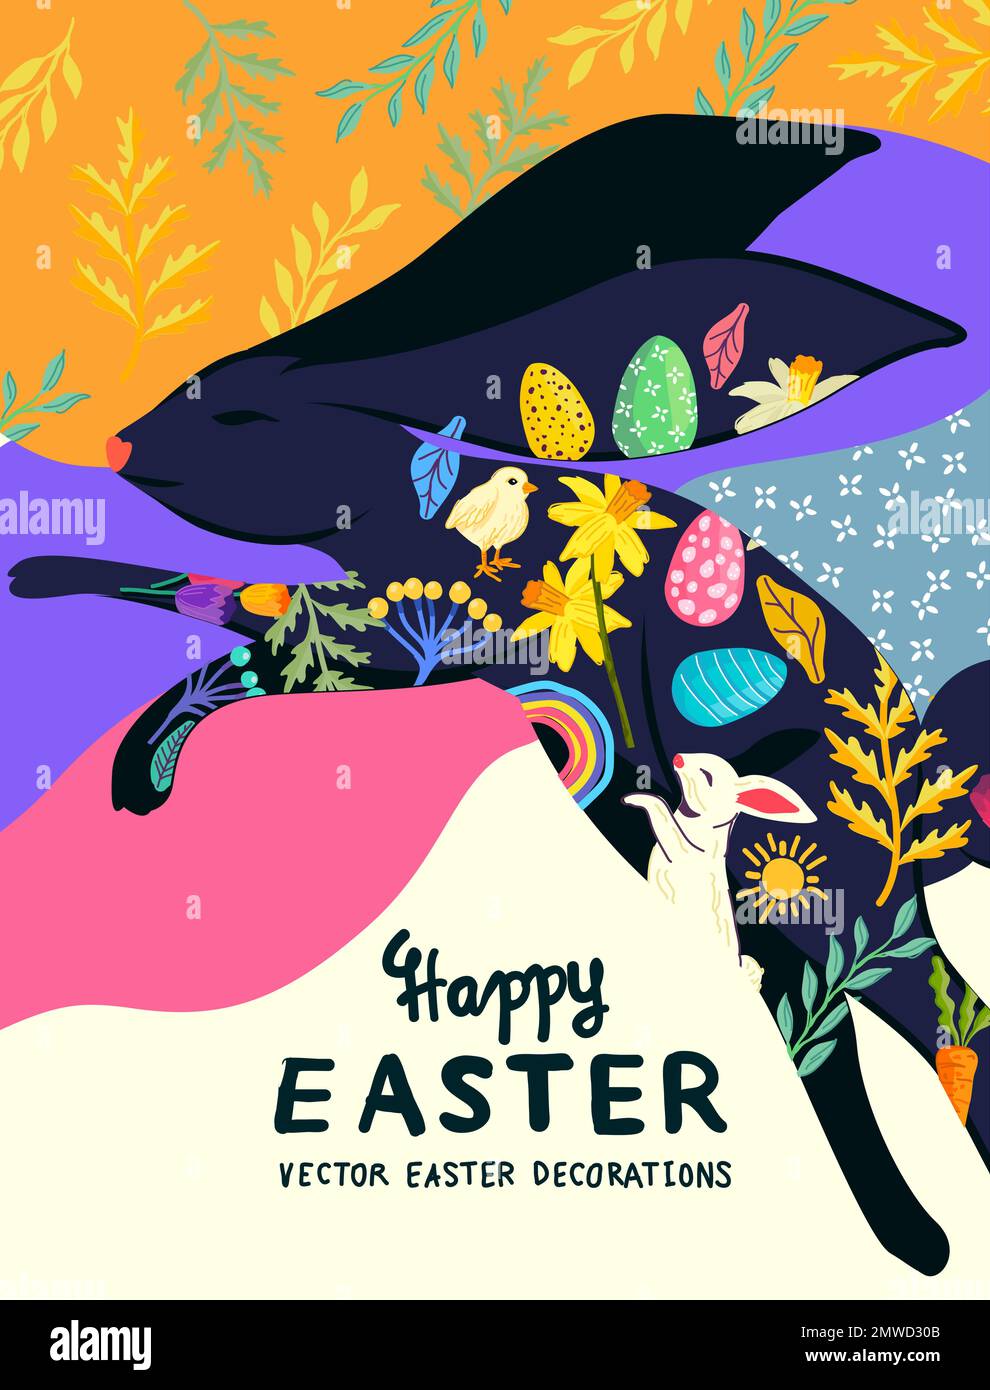 joyeux pâques coloré et lumineux lapin décoré avec des éléments floraux. Illustration Vecotr. Illustration de Vecteur